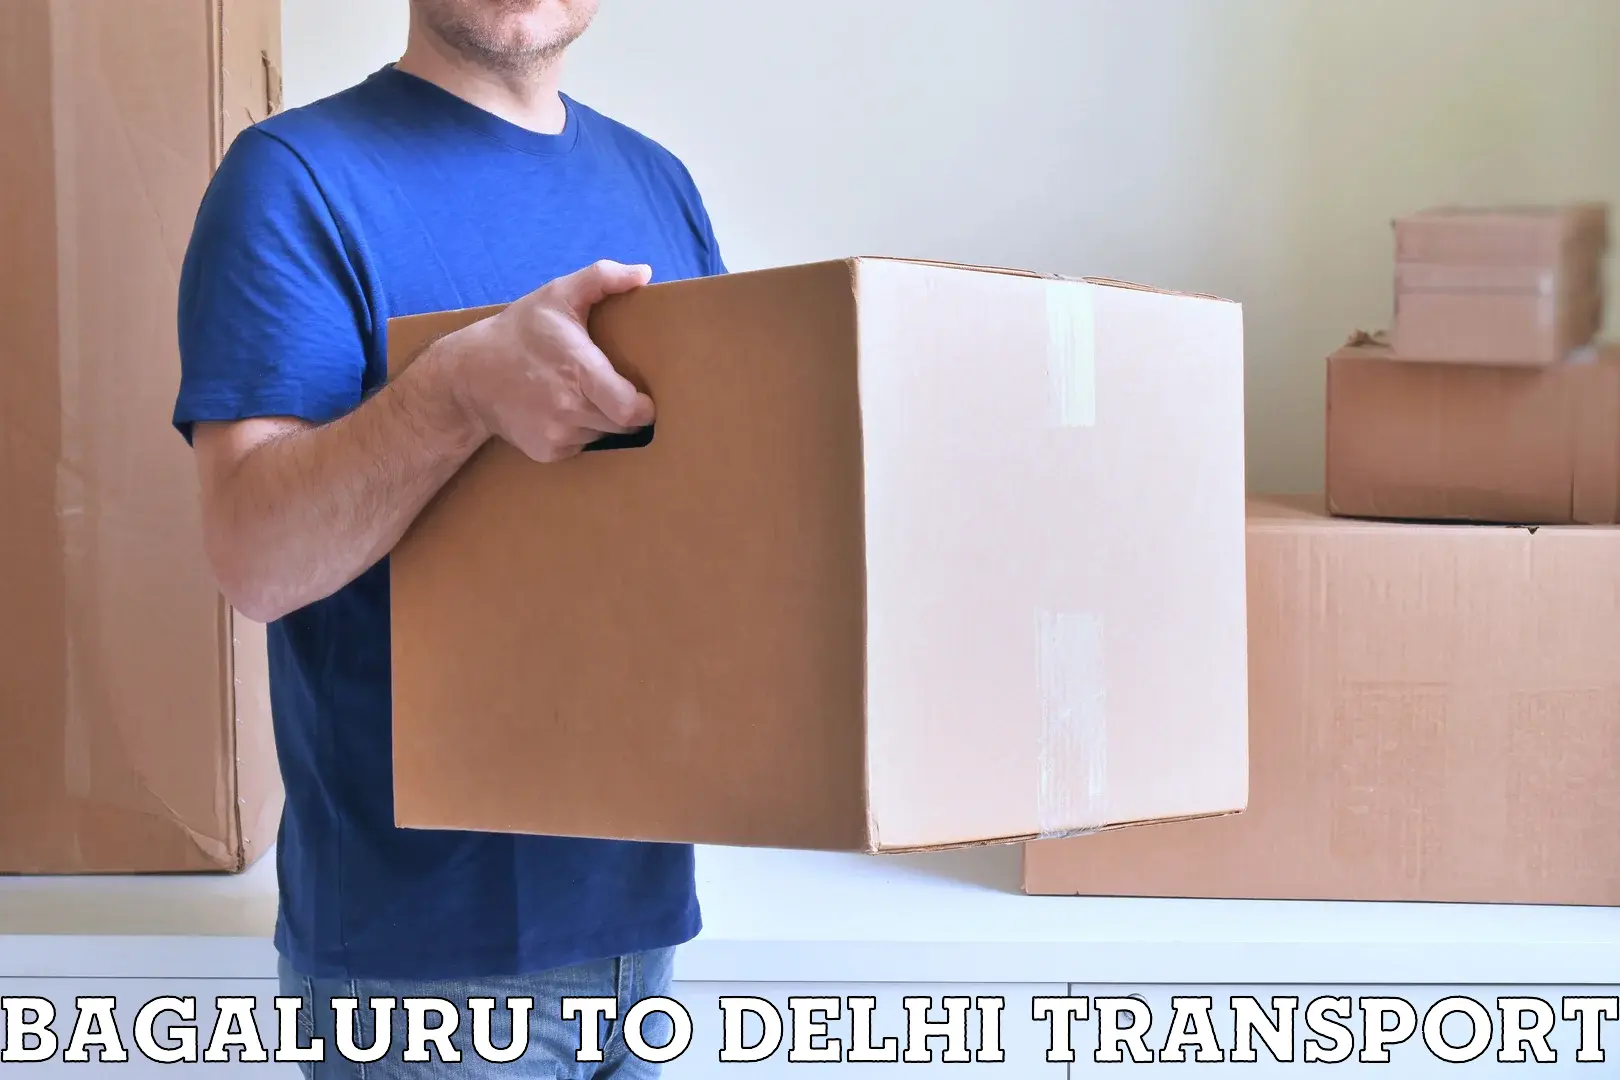 Pick up transport service Bagaluru to Delhi